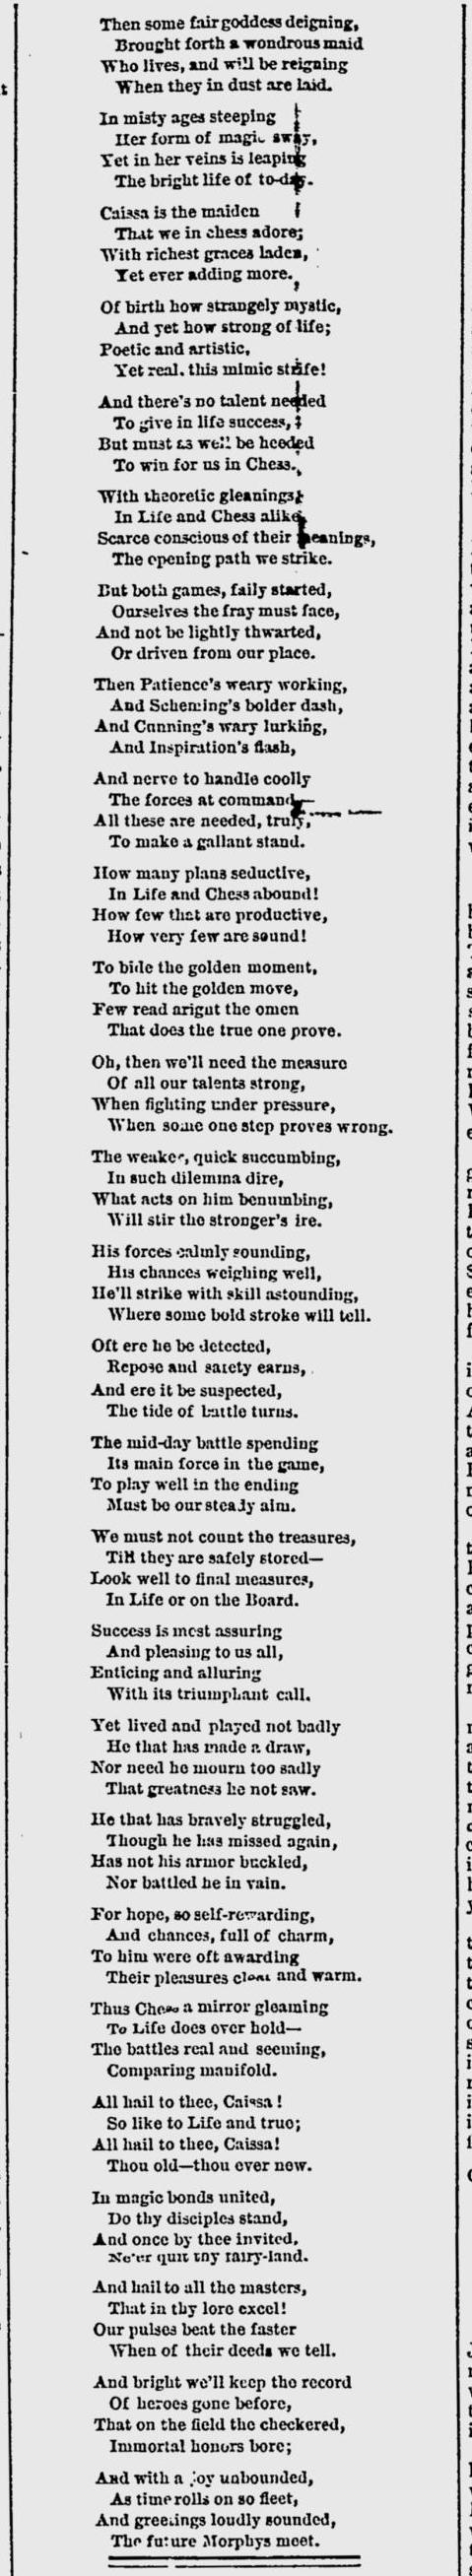 1877.08.02-02 Hartford Weekly Times.jpg